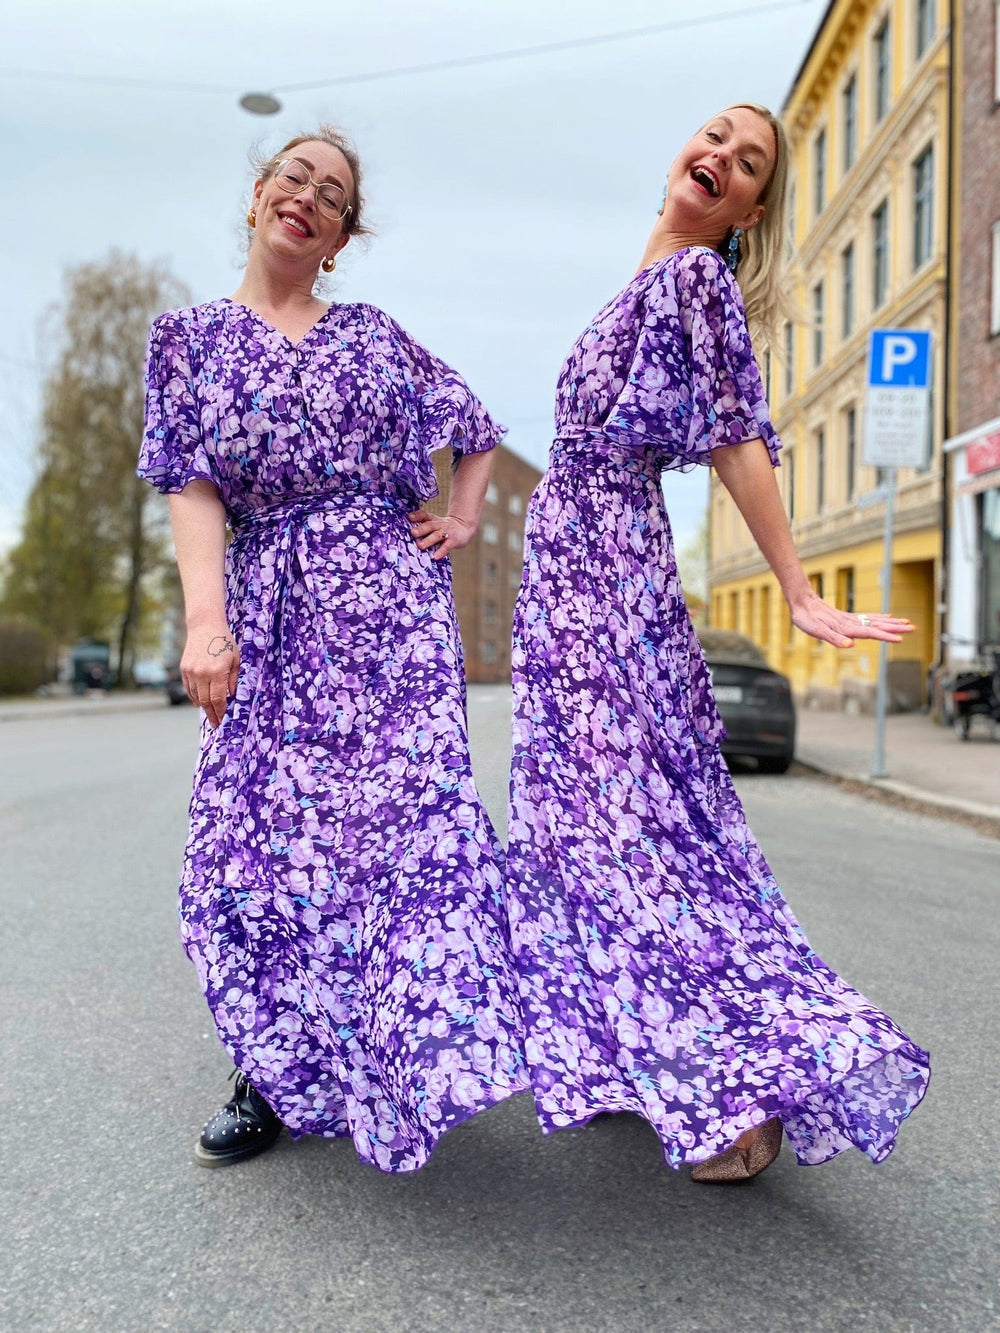 Dianas Vintage kjoler Garden dress - lilac